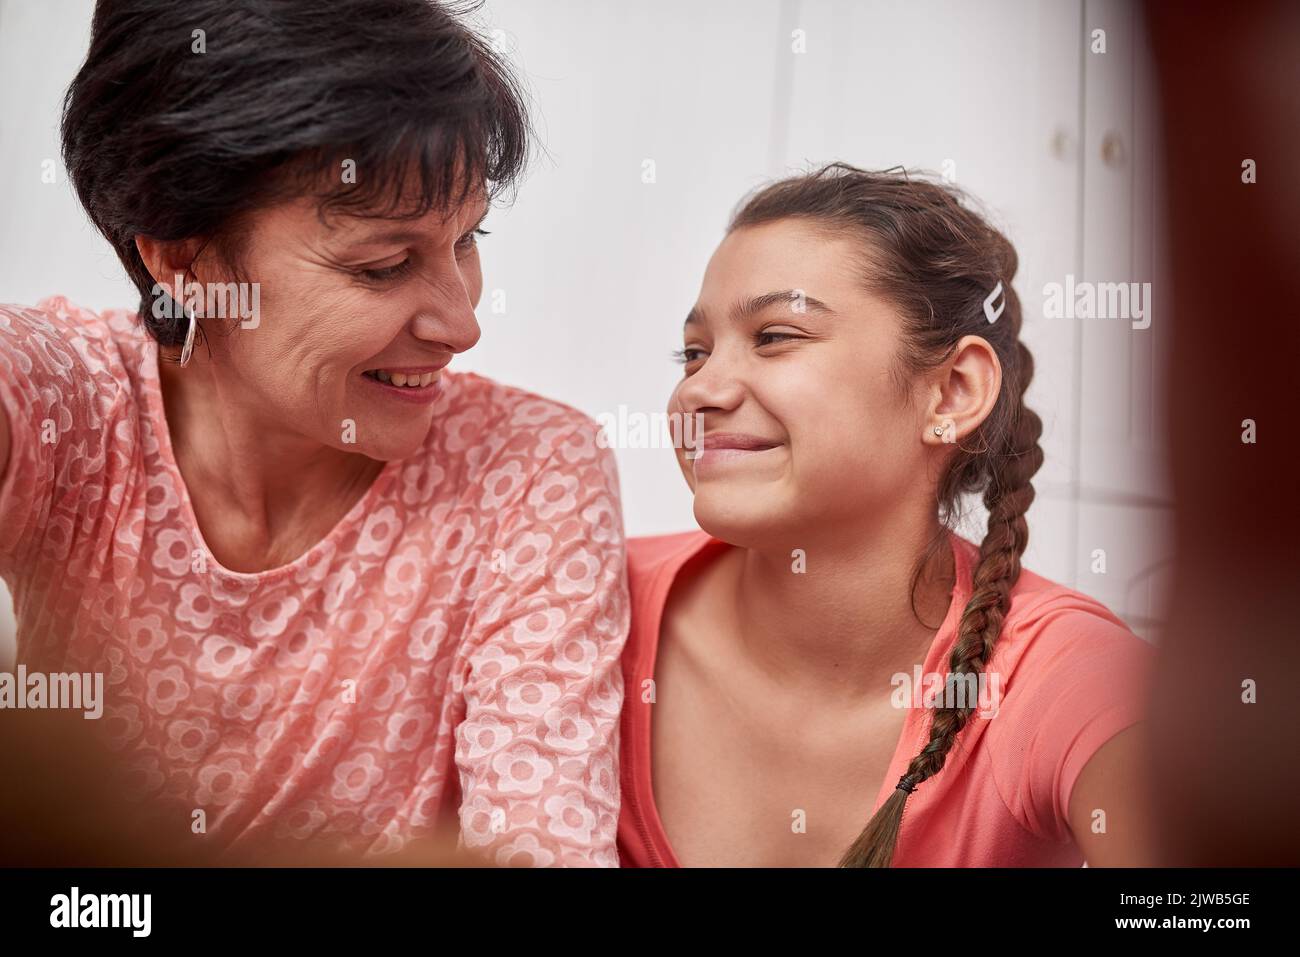 Ils partagent un lien spécial, une mère et une fille souriant l'une à l'autre. Banque D'Images